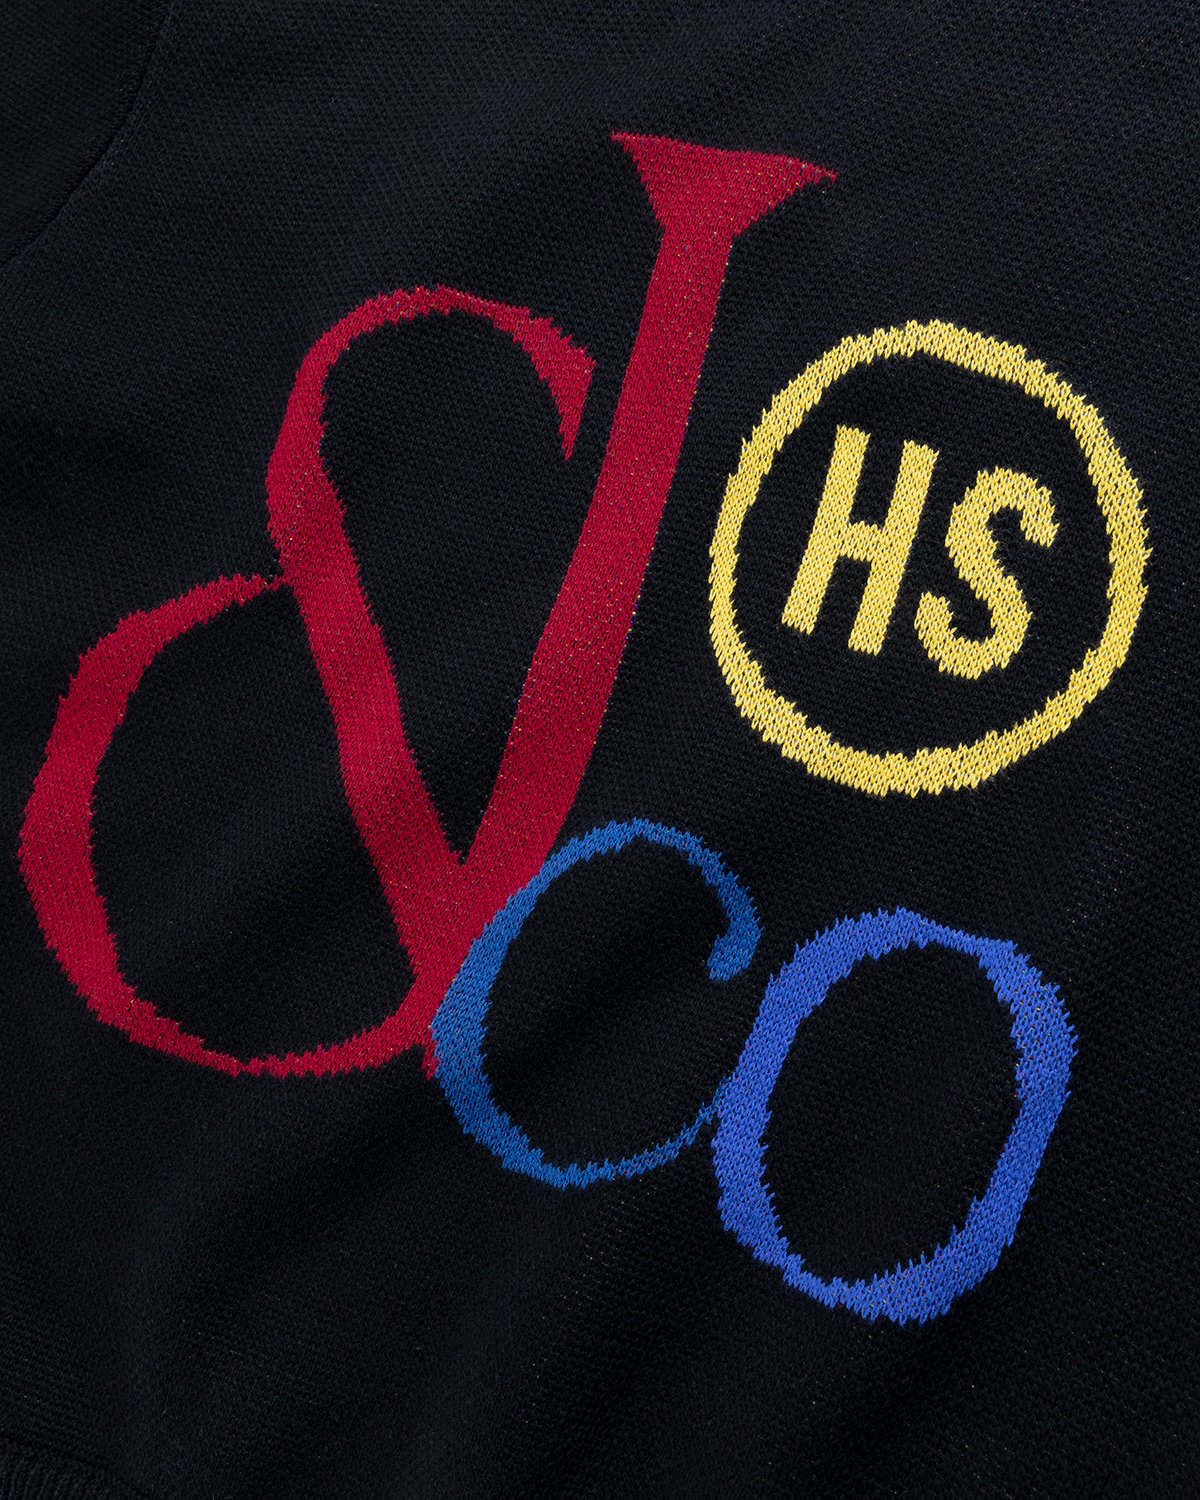 Jacob & Co. x Highsnobiety - Logo Knit Sweater Black - Clothing - Black - Image 3